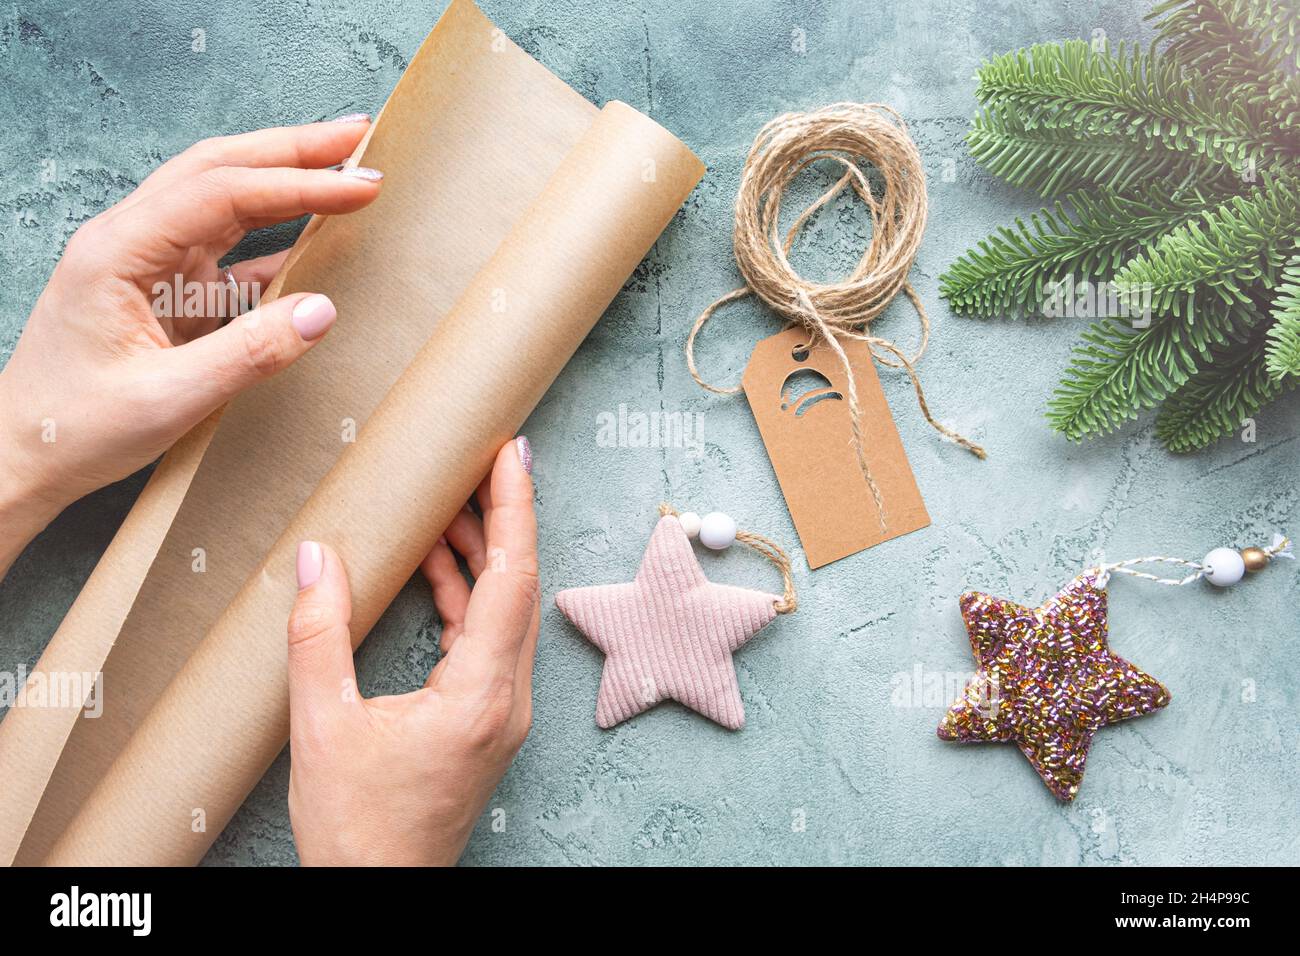 Nahaufnahme der Hände mit einer Rolle Geschenkpapier auf texturiertem Hintergrund mit Weihnachtsspielzeug, Anhänger und Fichtenzweig. Gemütliches Weihnachtskonzept Stockfoto